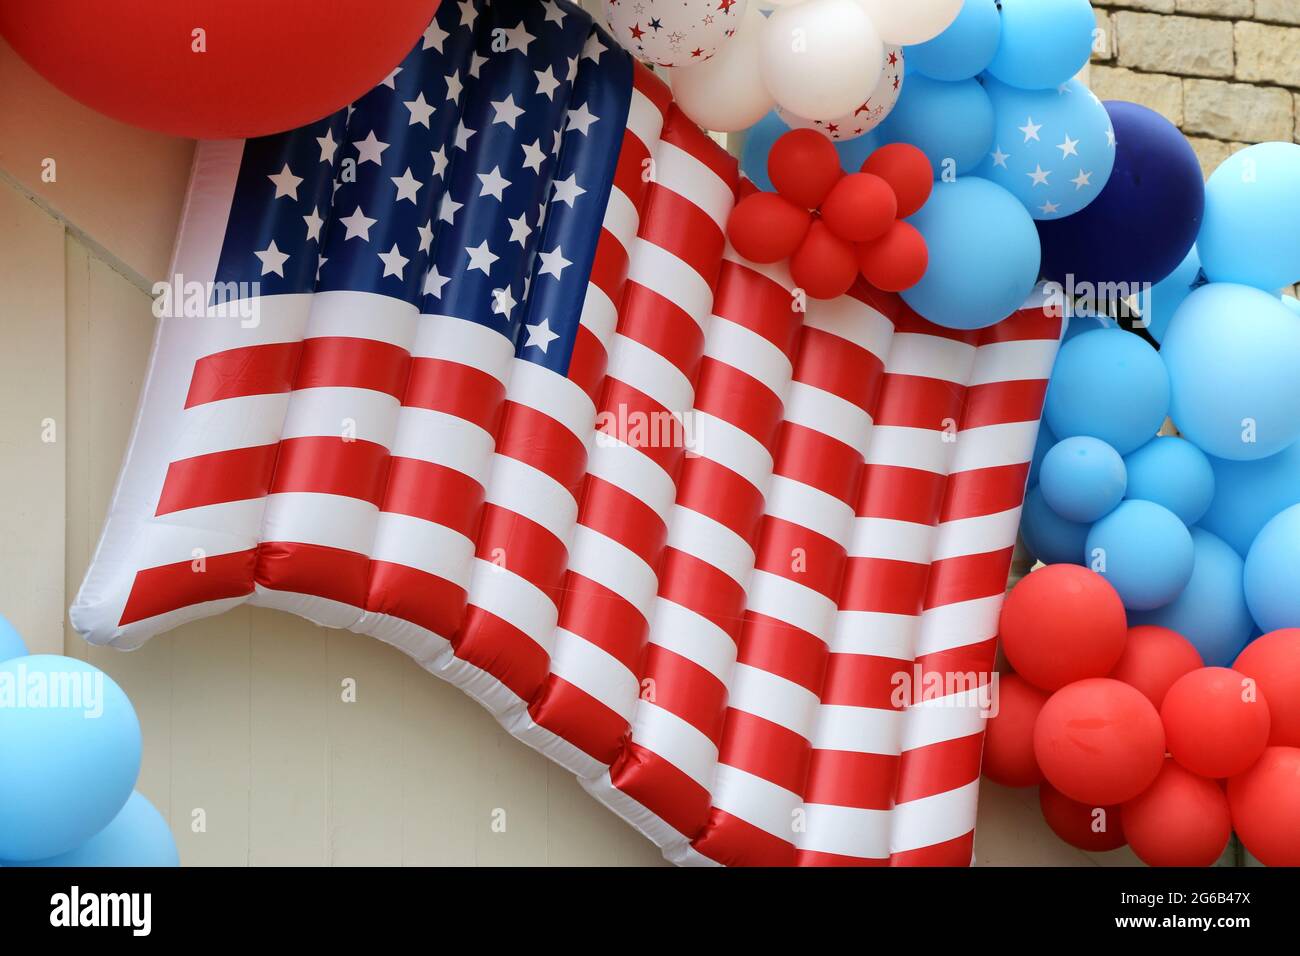 Présentation festive et lumineuse de ballons rouges, blancs et bleus avec le drapeau américain en évidence le jour de l'indépendance. Banque D'Images